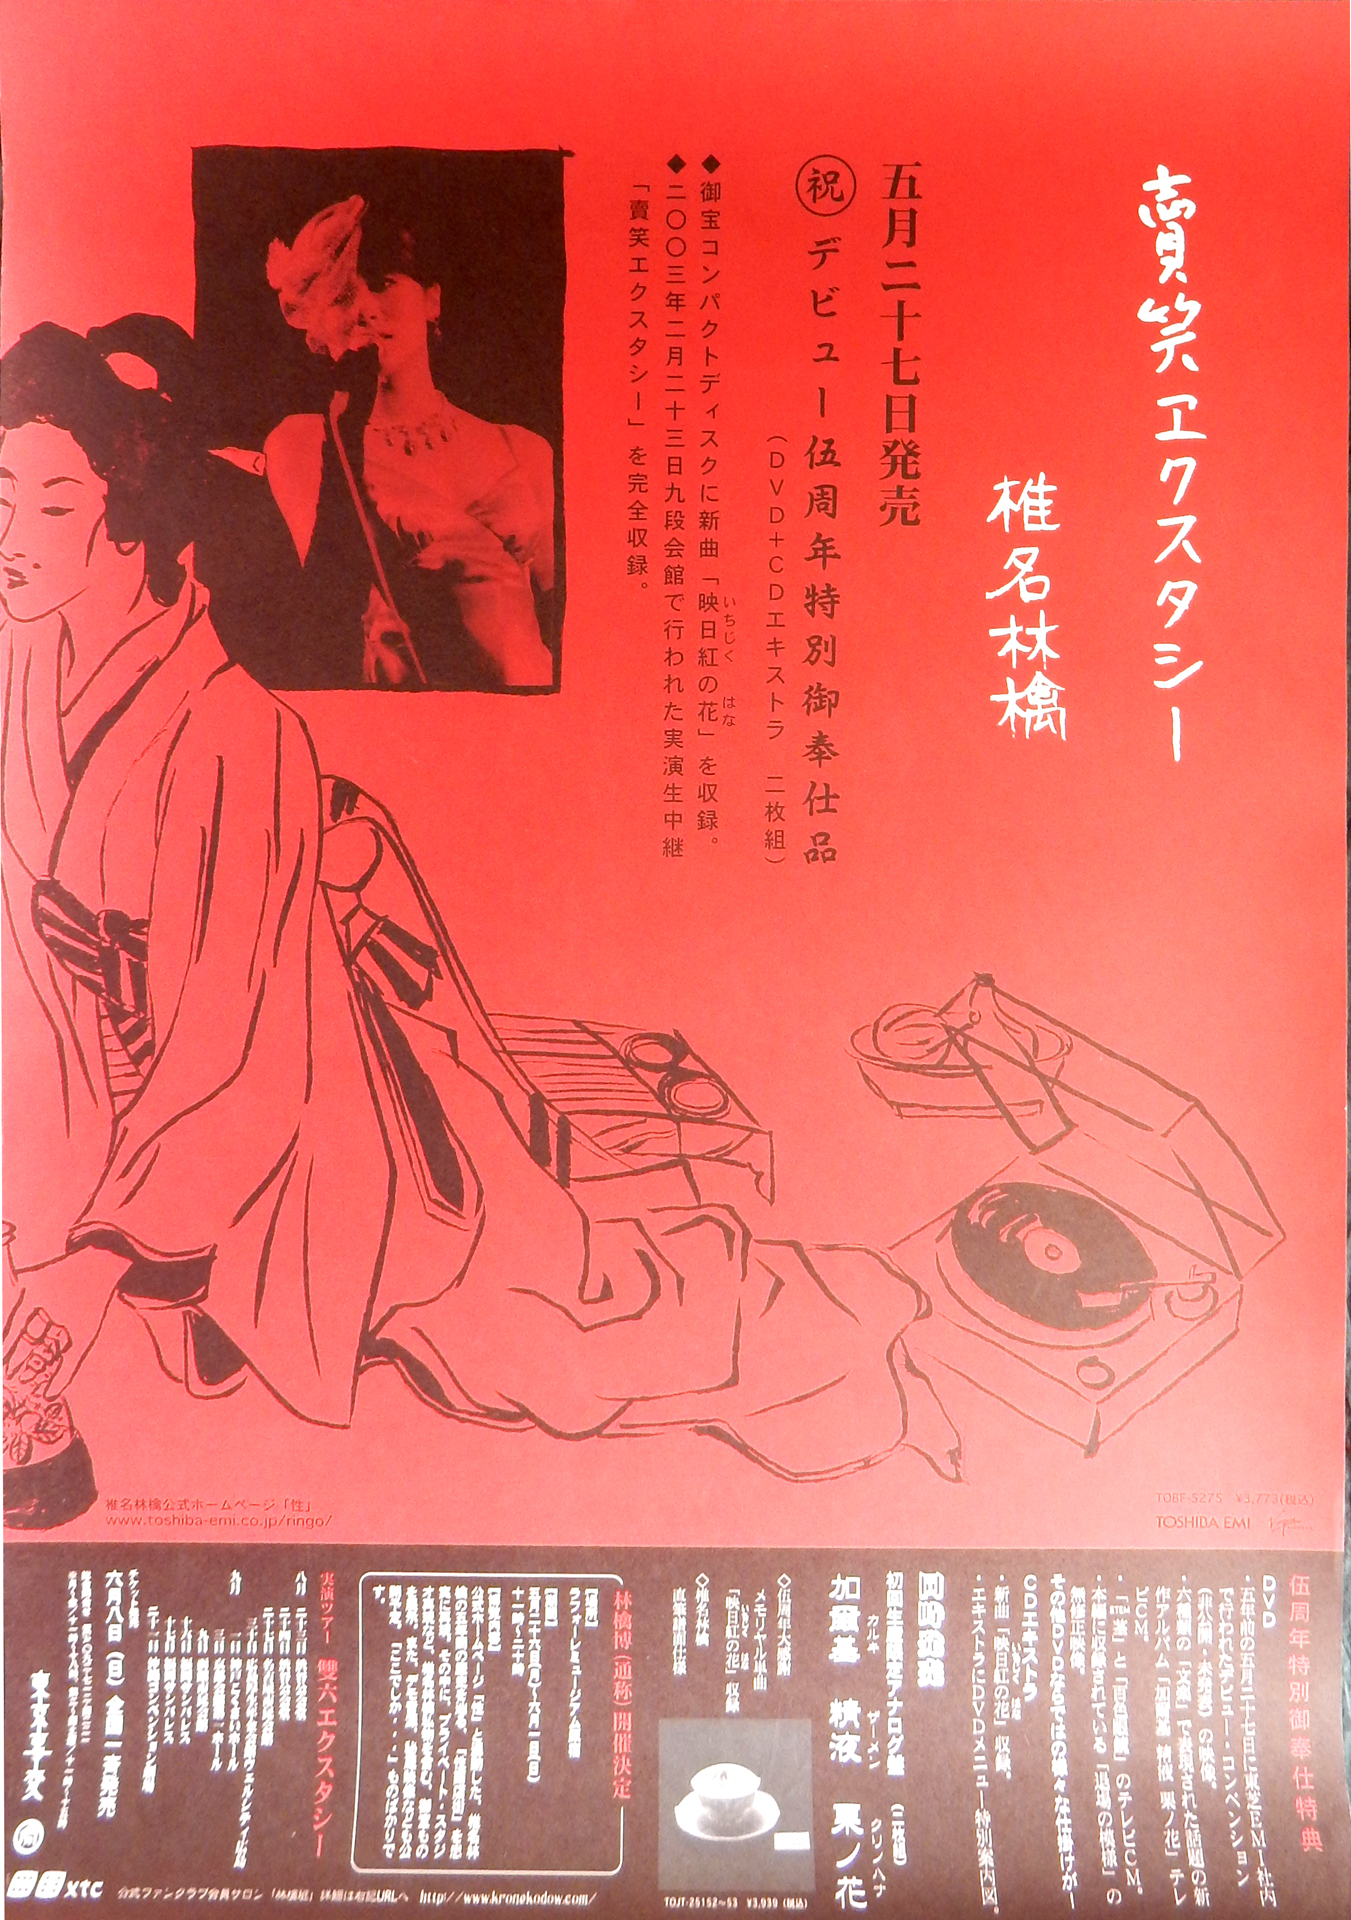 椎名林檎 「賣笑エクスタシー」のポスター